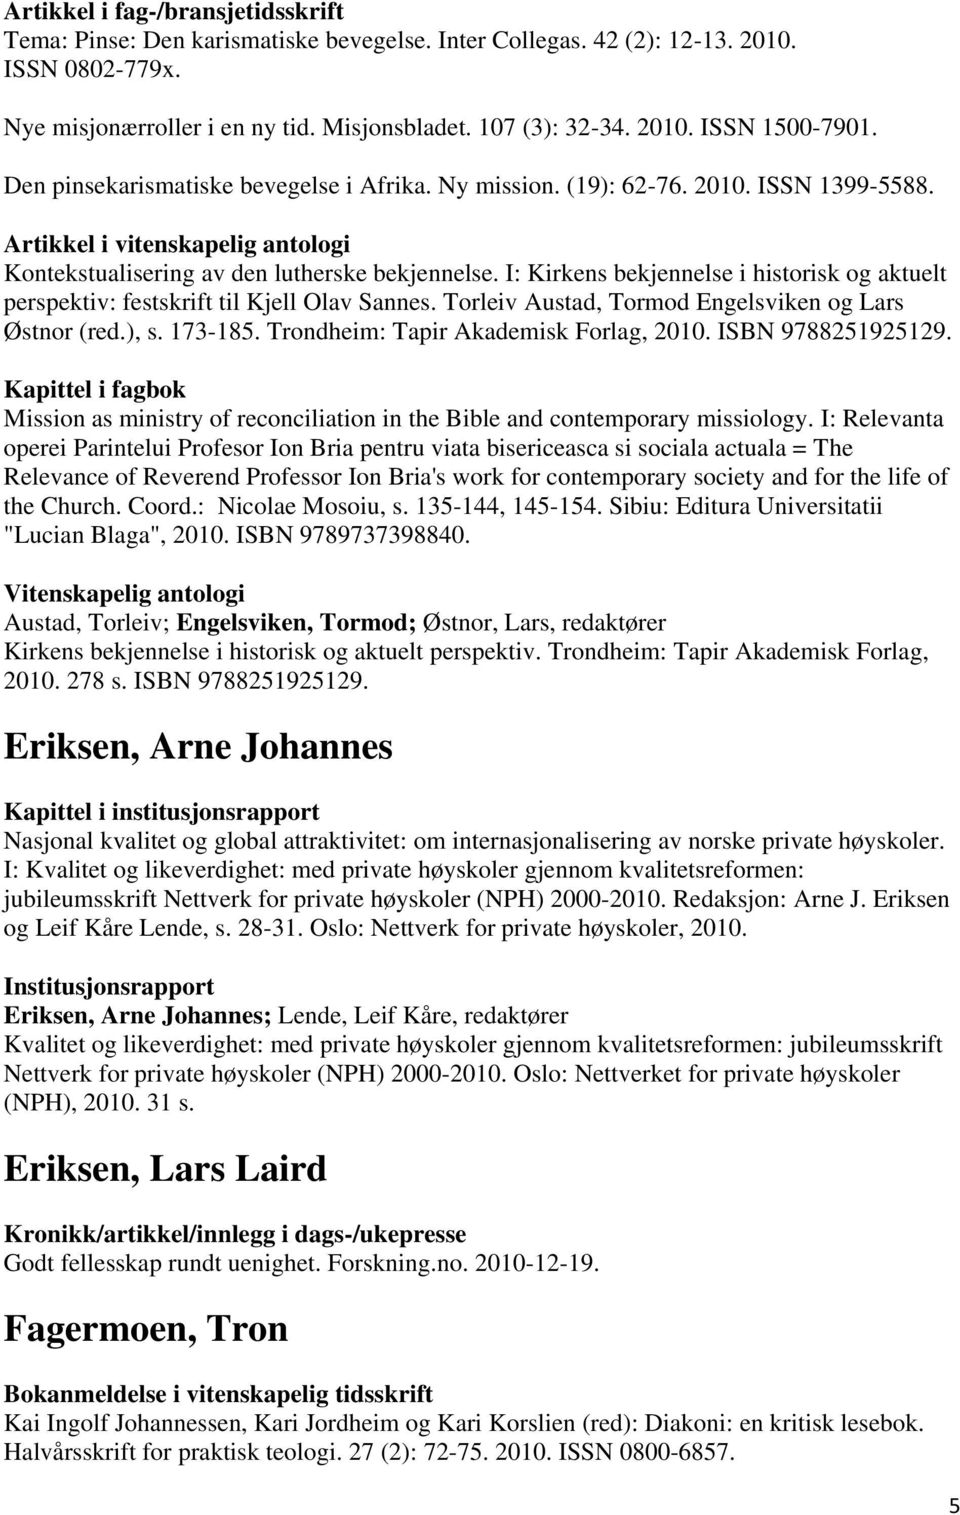 I: Kirkens bekjennelse i historisk og aktuelt perspektiv: festskrift til Kjell Olav Sannes. Torleiv Austad, Tormod Engelsviken og Lars Østnor (red.), s. 173-185.